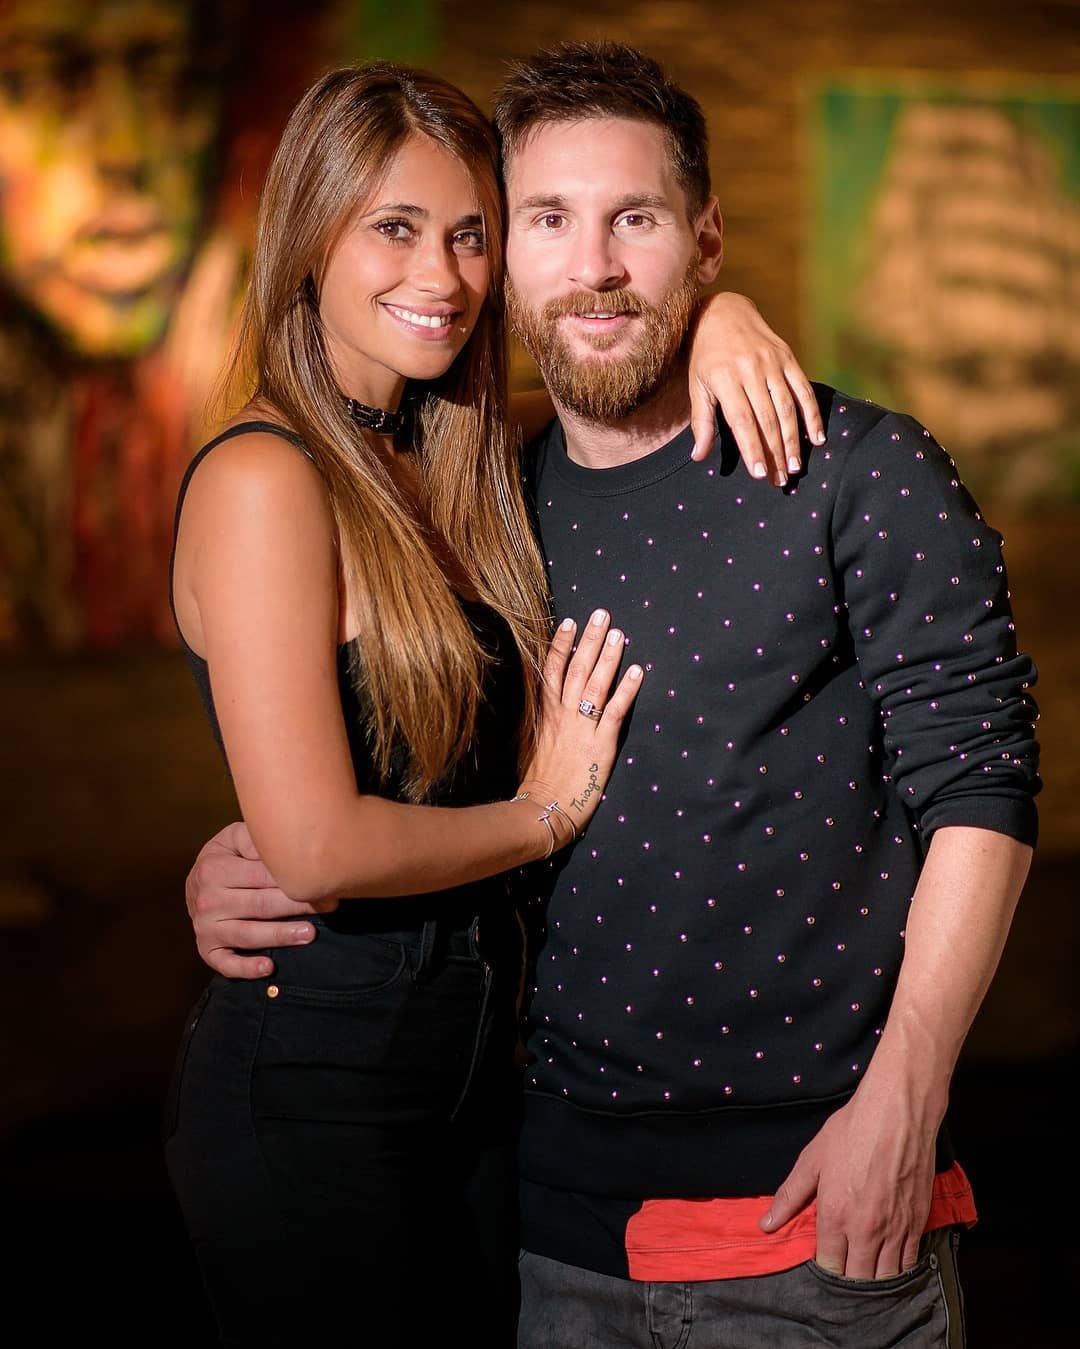 النجم الأرجنتني في فريق برشلونة يشارك صورة عبر حسابه مع زوجته في عيد ميلادها watanserb.com